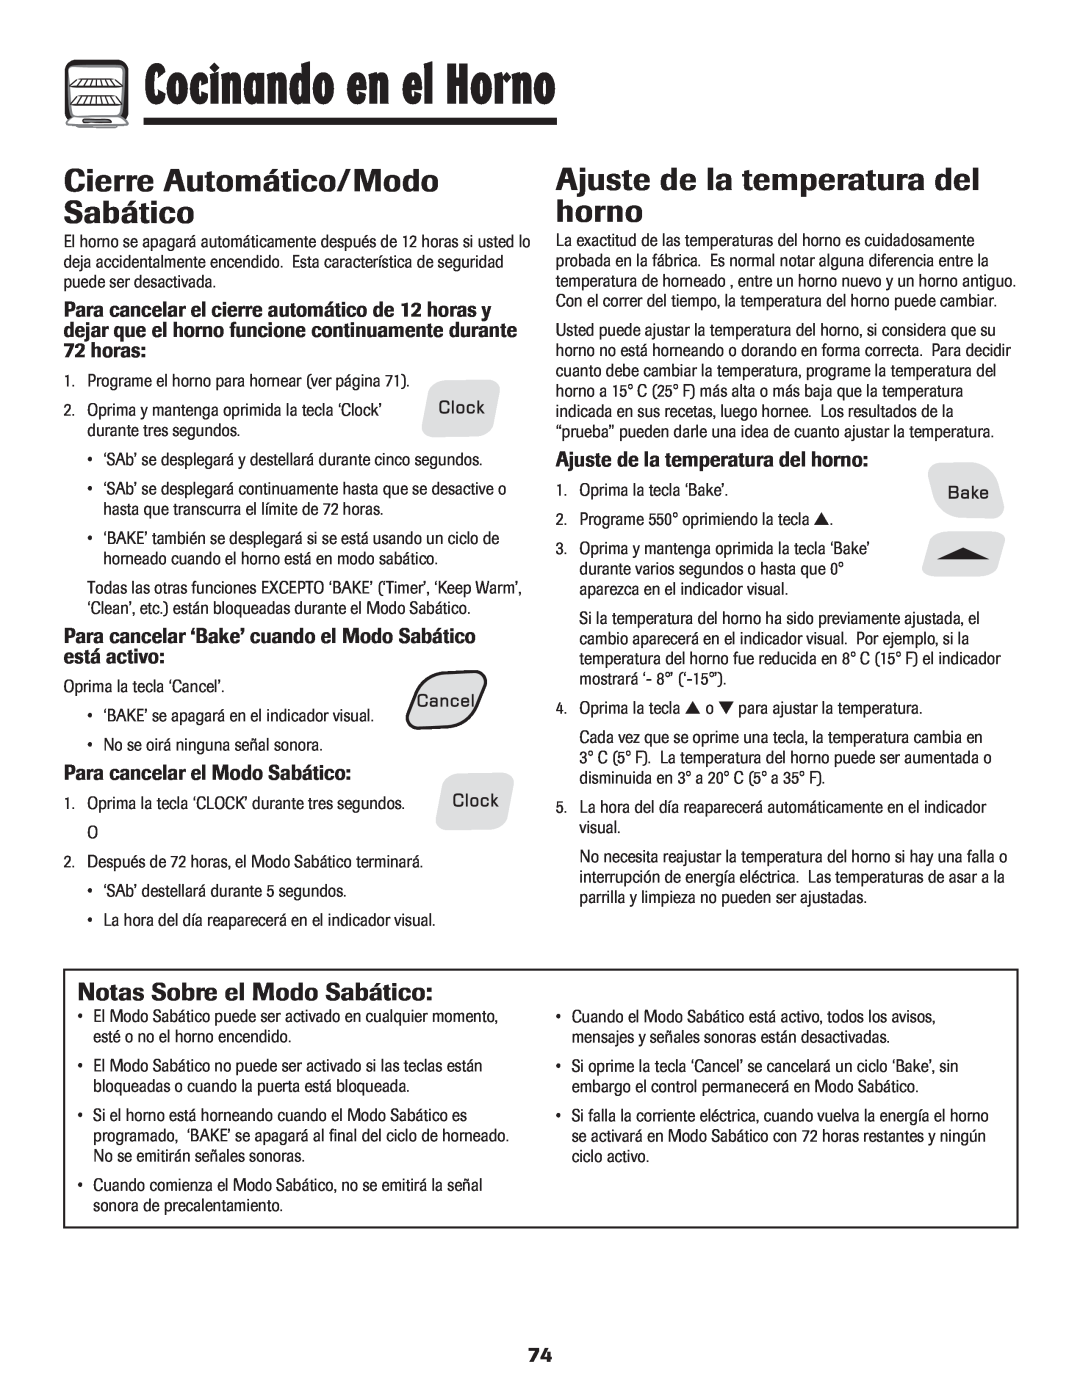 Amana pmn Cierre Automático/Modo Sabático, Ajuste de la temperatura del horno, Notas Sobre el Modo Sabático, horas 